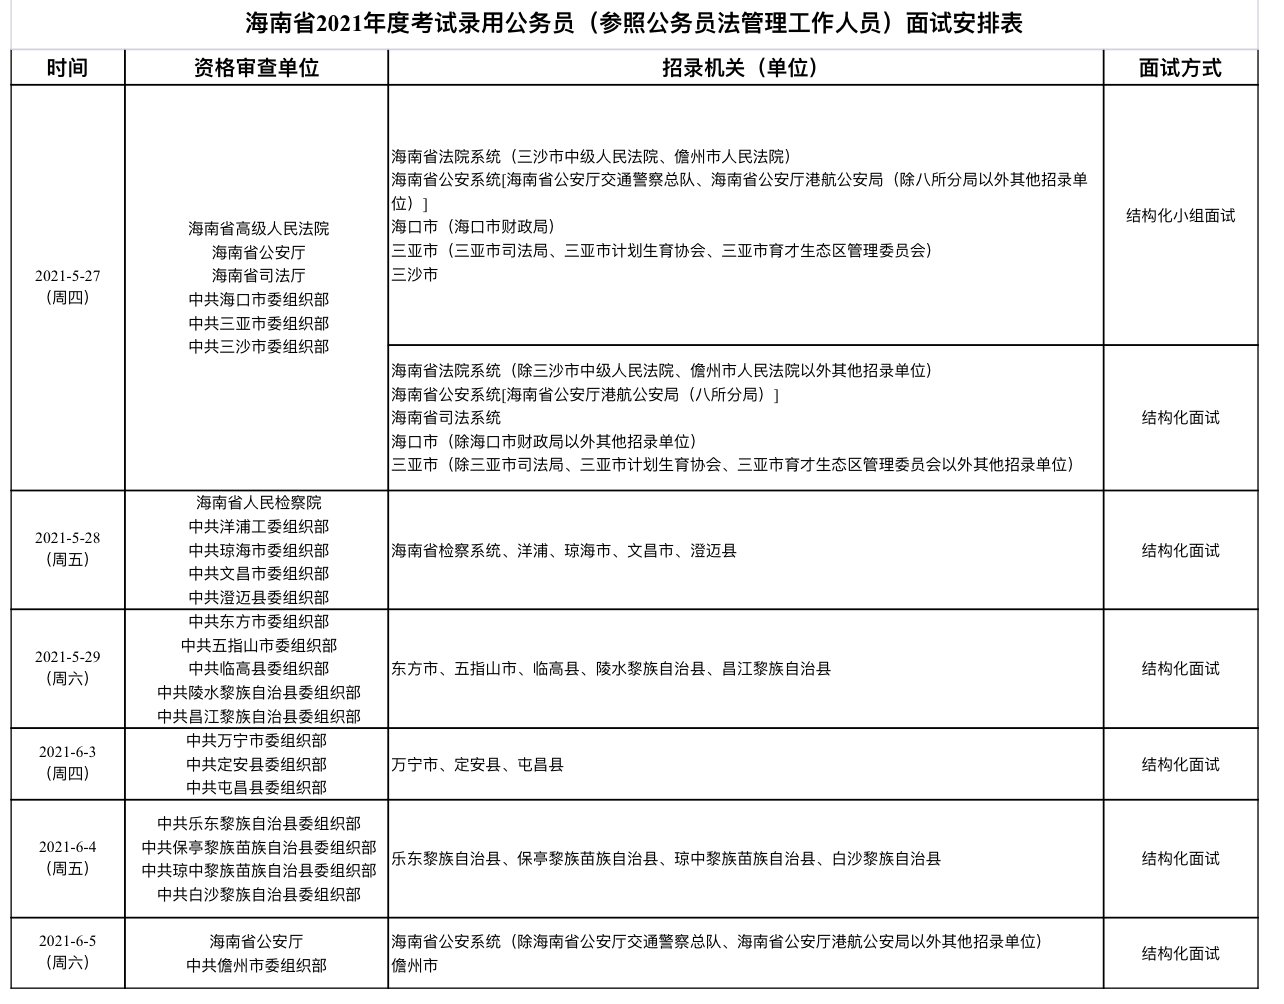 海南省2021年考试录用公务员面试时间公布 省考试局发布重要提醒→